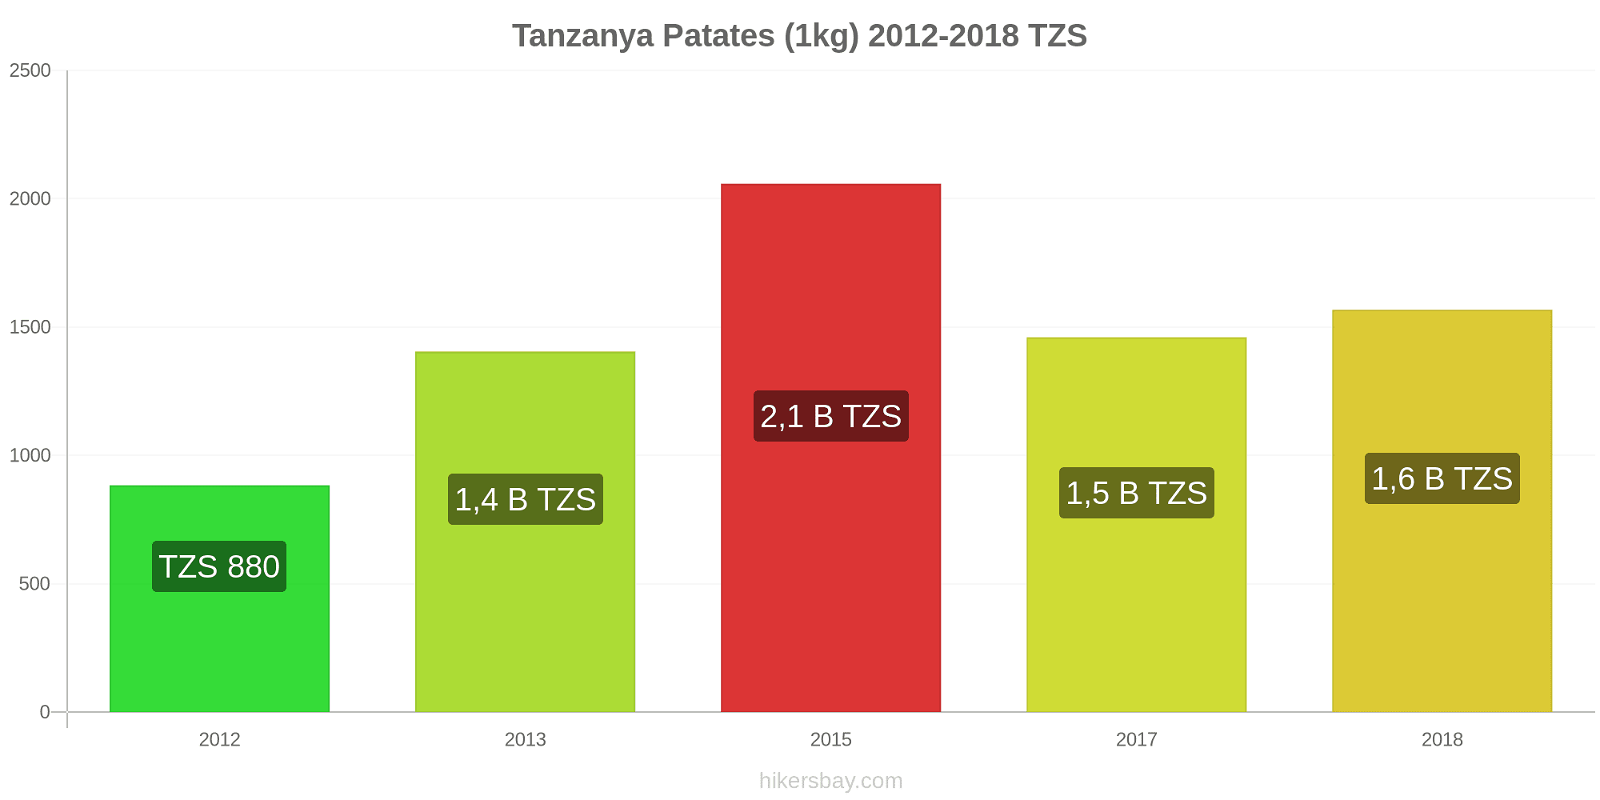 Tanzanya fiyat değişiklikleri Patates (1kg) hikersbay.com